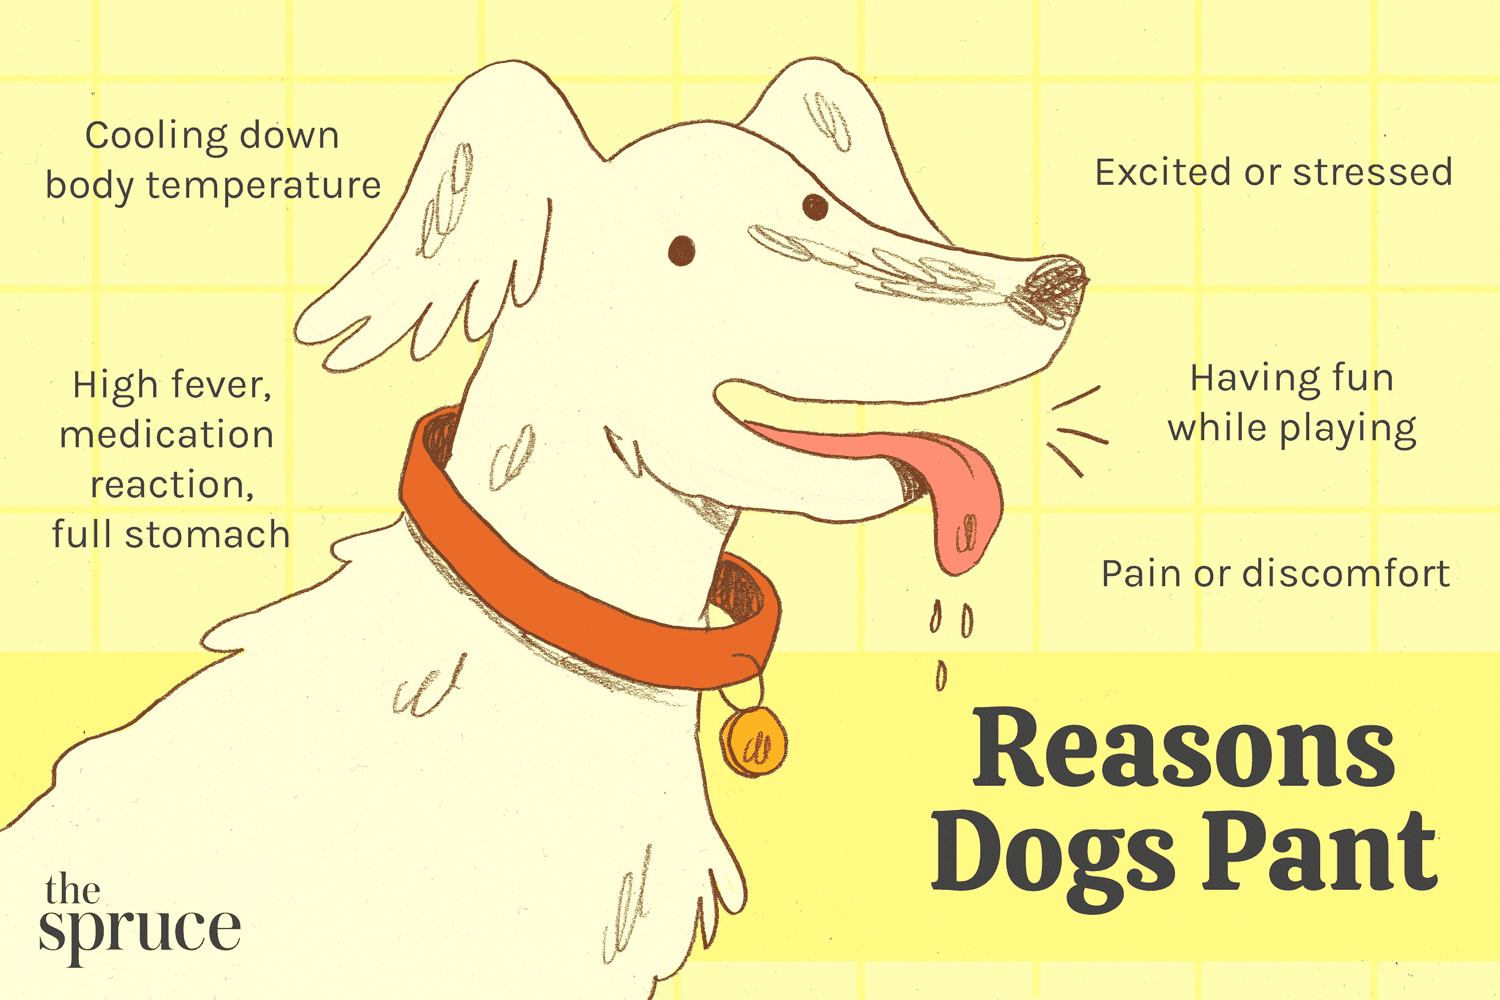 Cinq raisons courantes pour lesquelles les chiens halètent